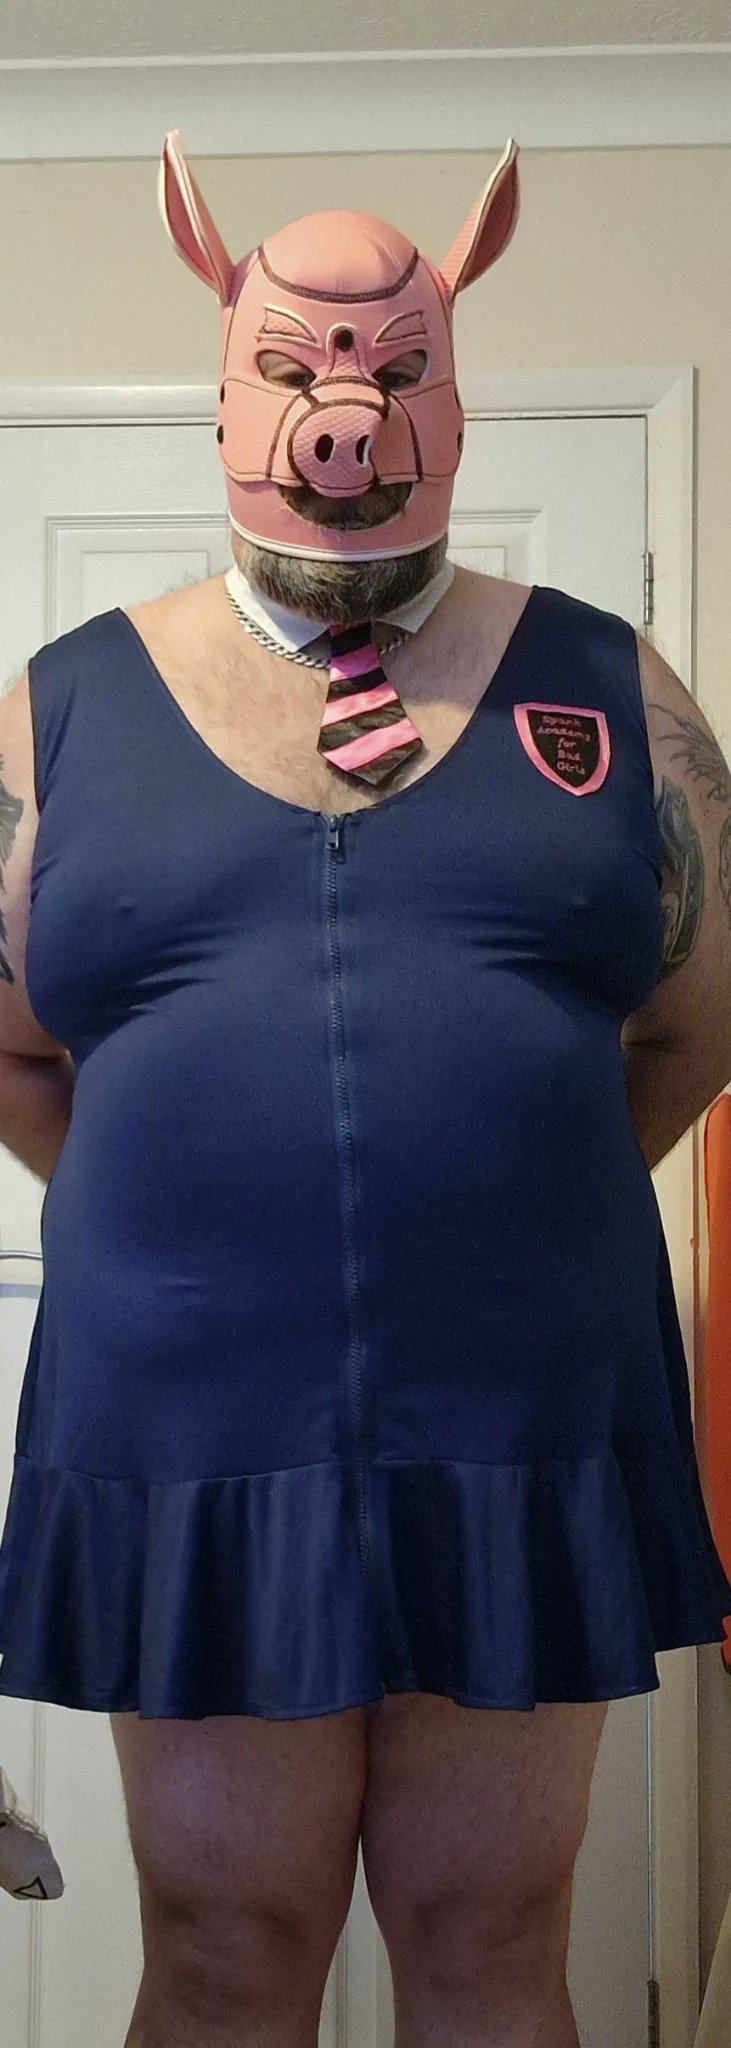 Fat Piggy sissy fag